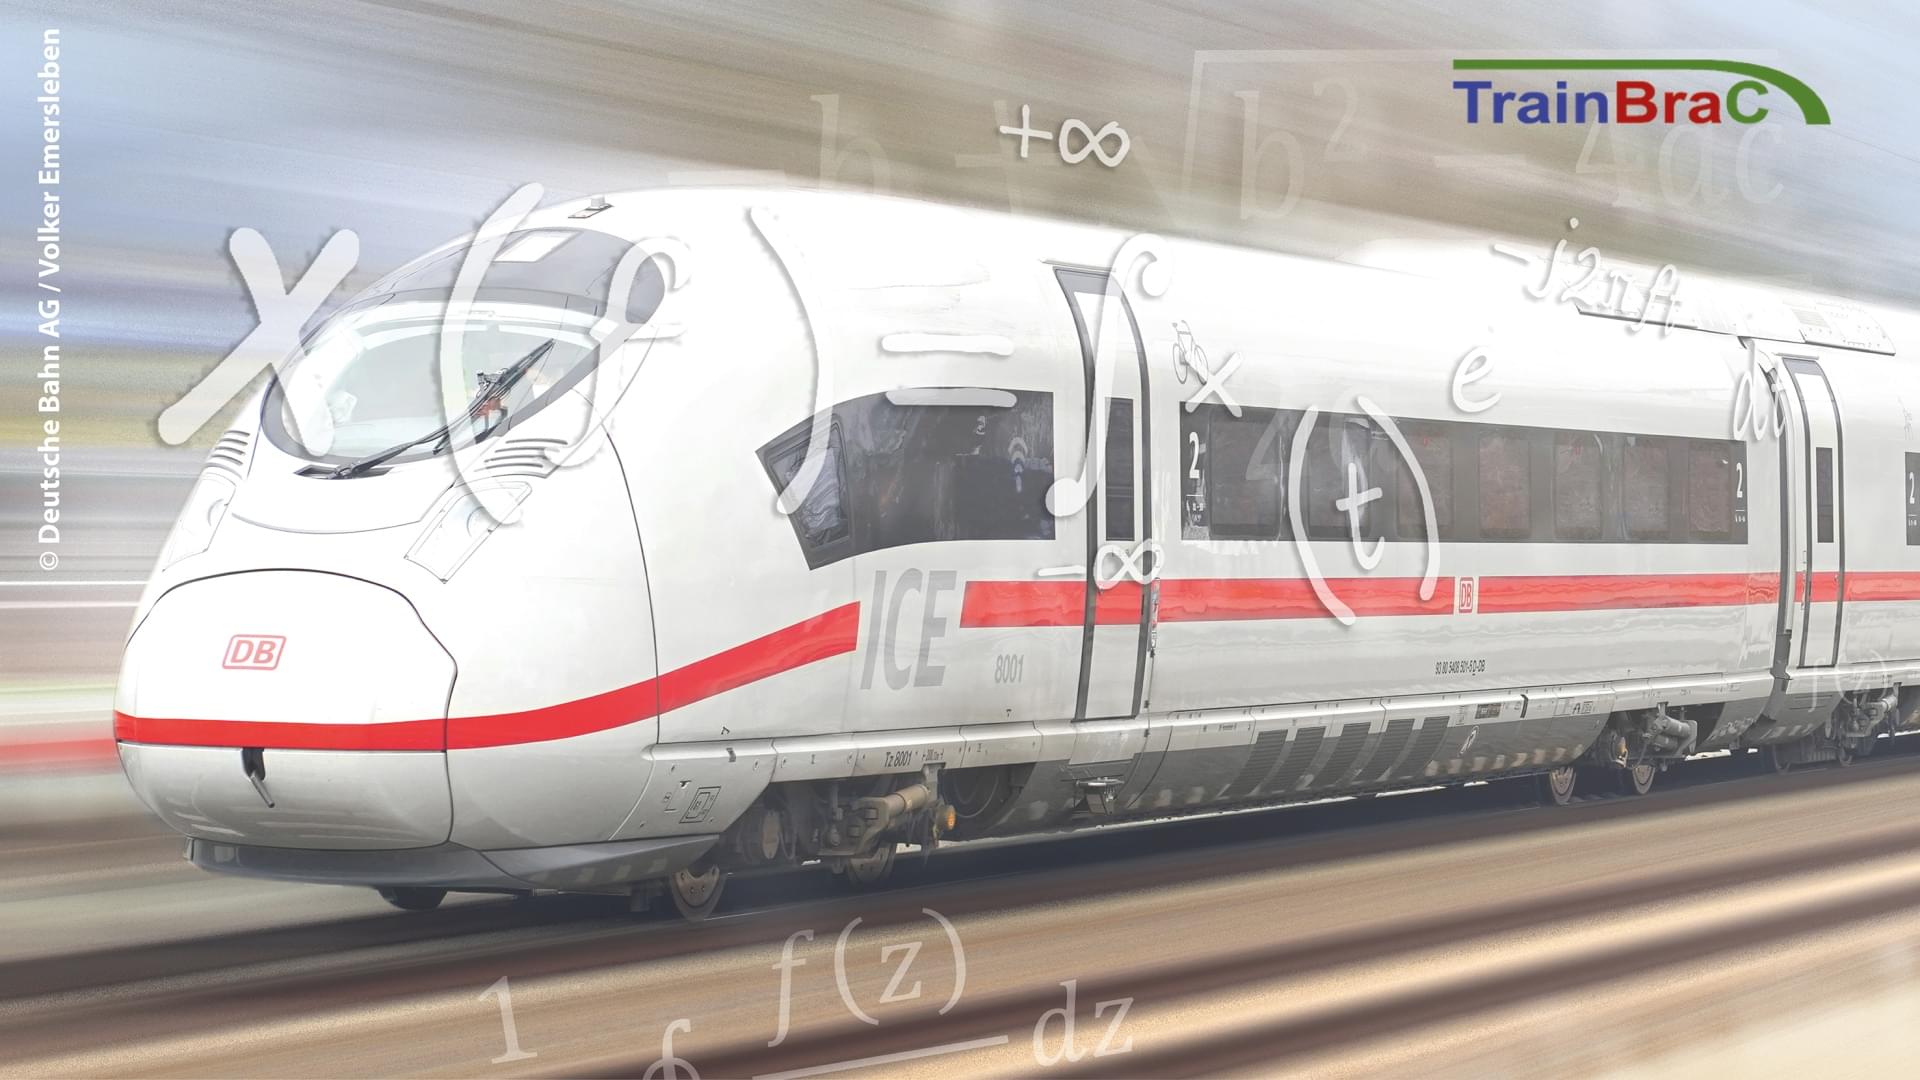 Überarbeitetes Bild eines ICE der DB versehen mit Formeln und dem TrainBraC Logo